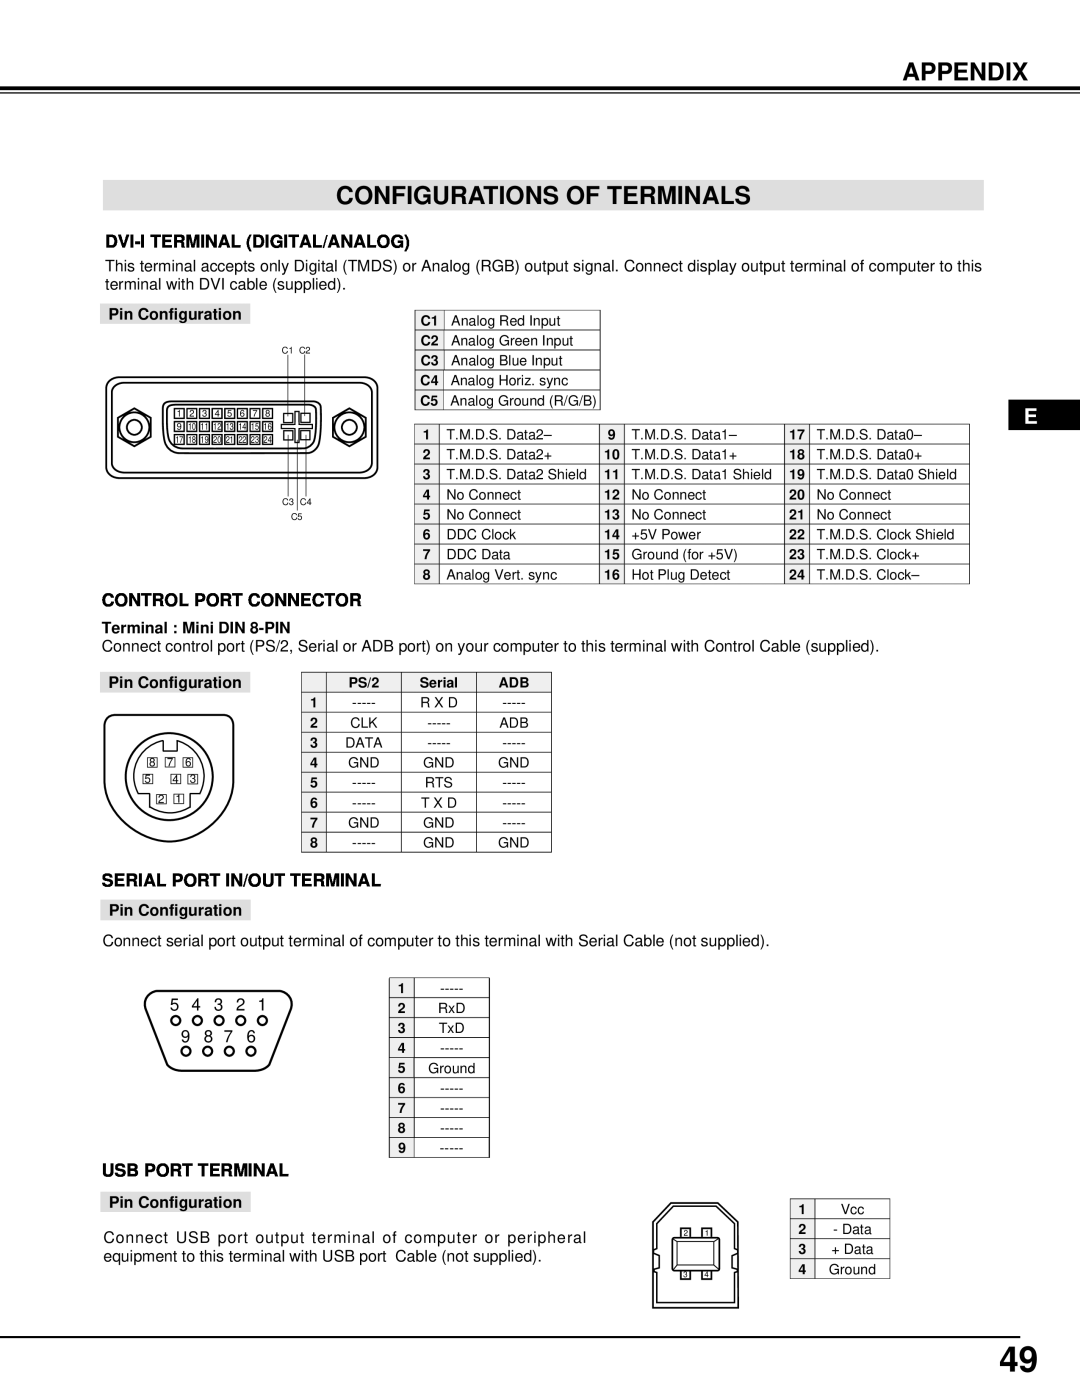 Dukane 28A8945, 28A9058 manual Appendix Configurations Of Terminals, Dvi-I Terminal Digital/Analog, Control Port Connector 